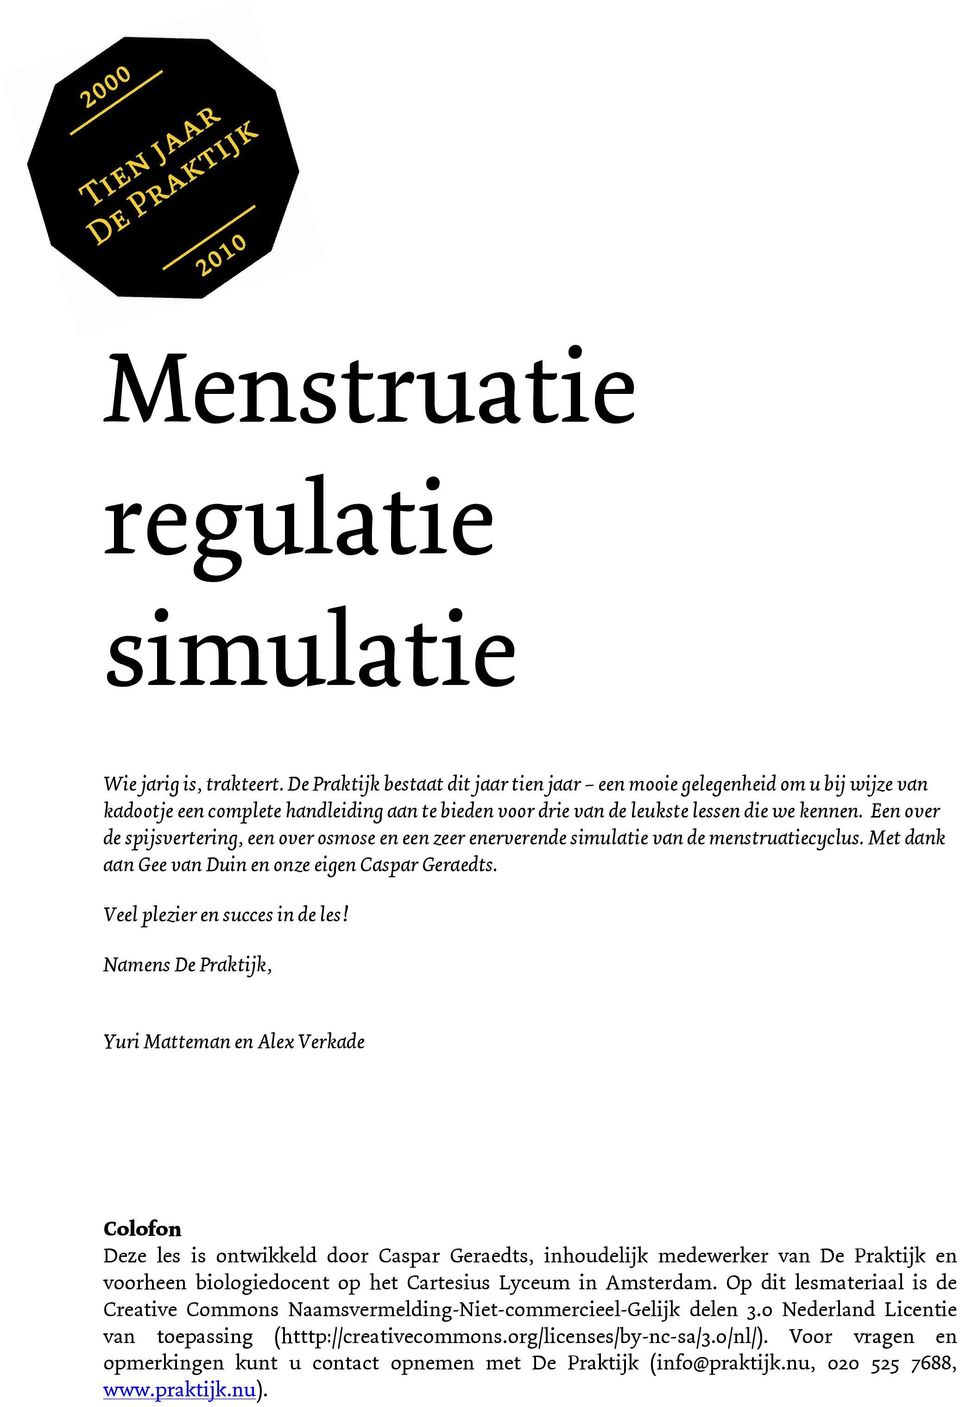 Een over de spijsvertering, een over osmose en een zeer enerverende simulatie van de menstruatiecyclus. Met dank aan Gee van Duin en onze eigen Caspar Geraedts. Veel plezier en succes in de les!